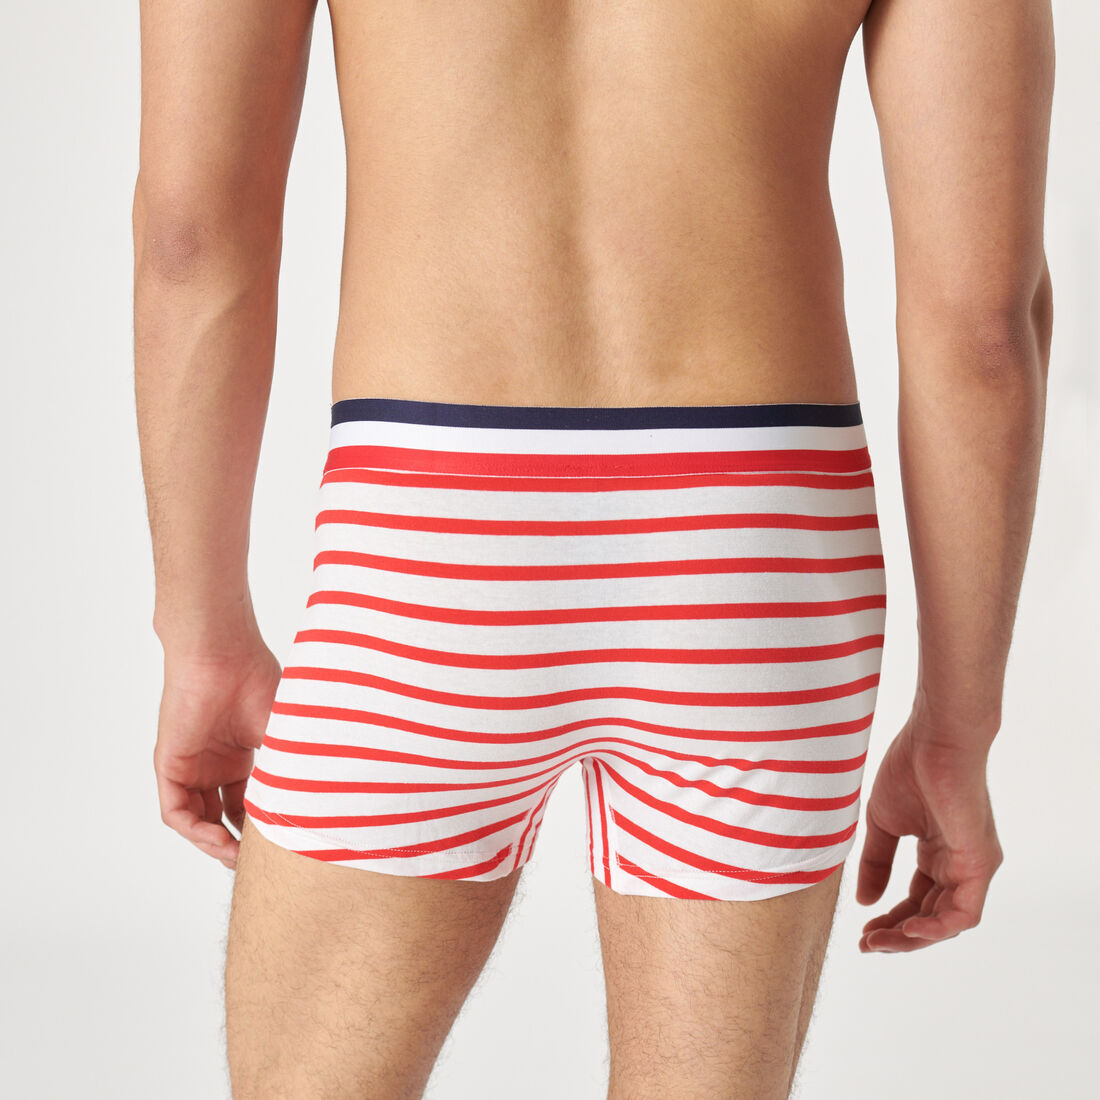 Breton boxer shorts;